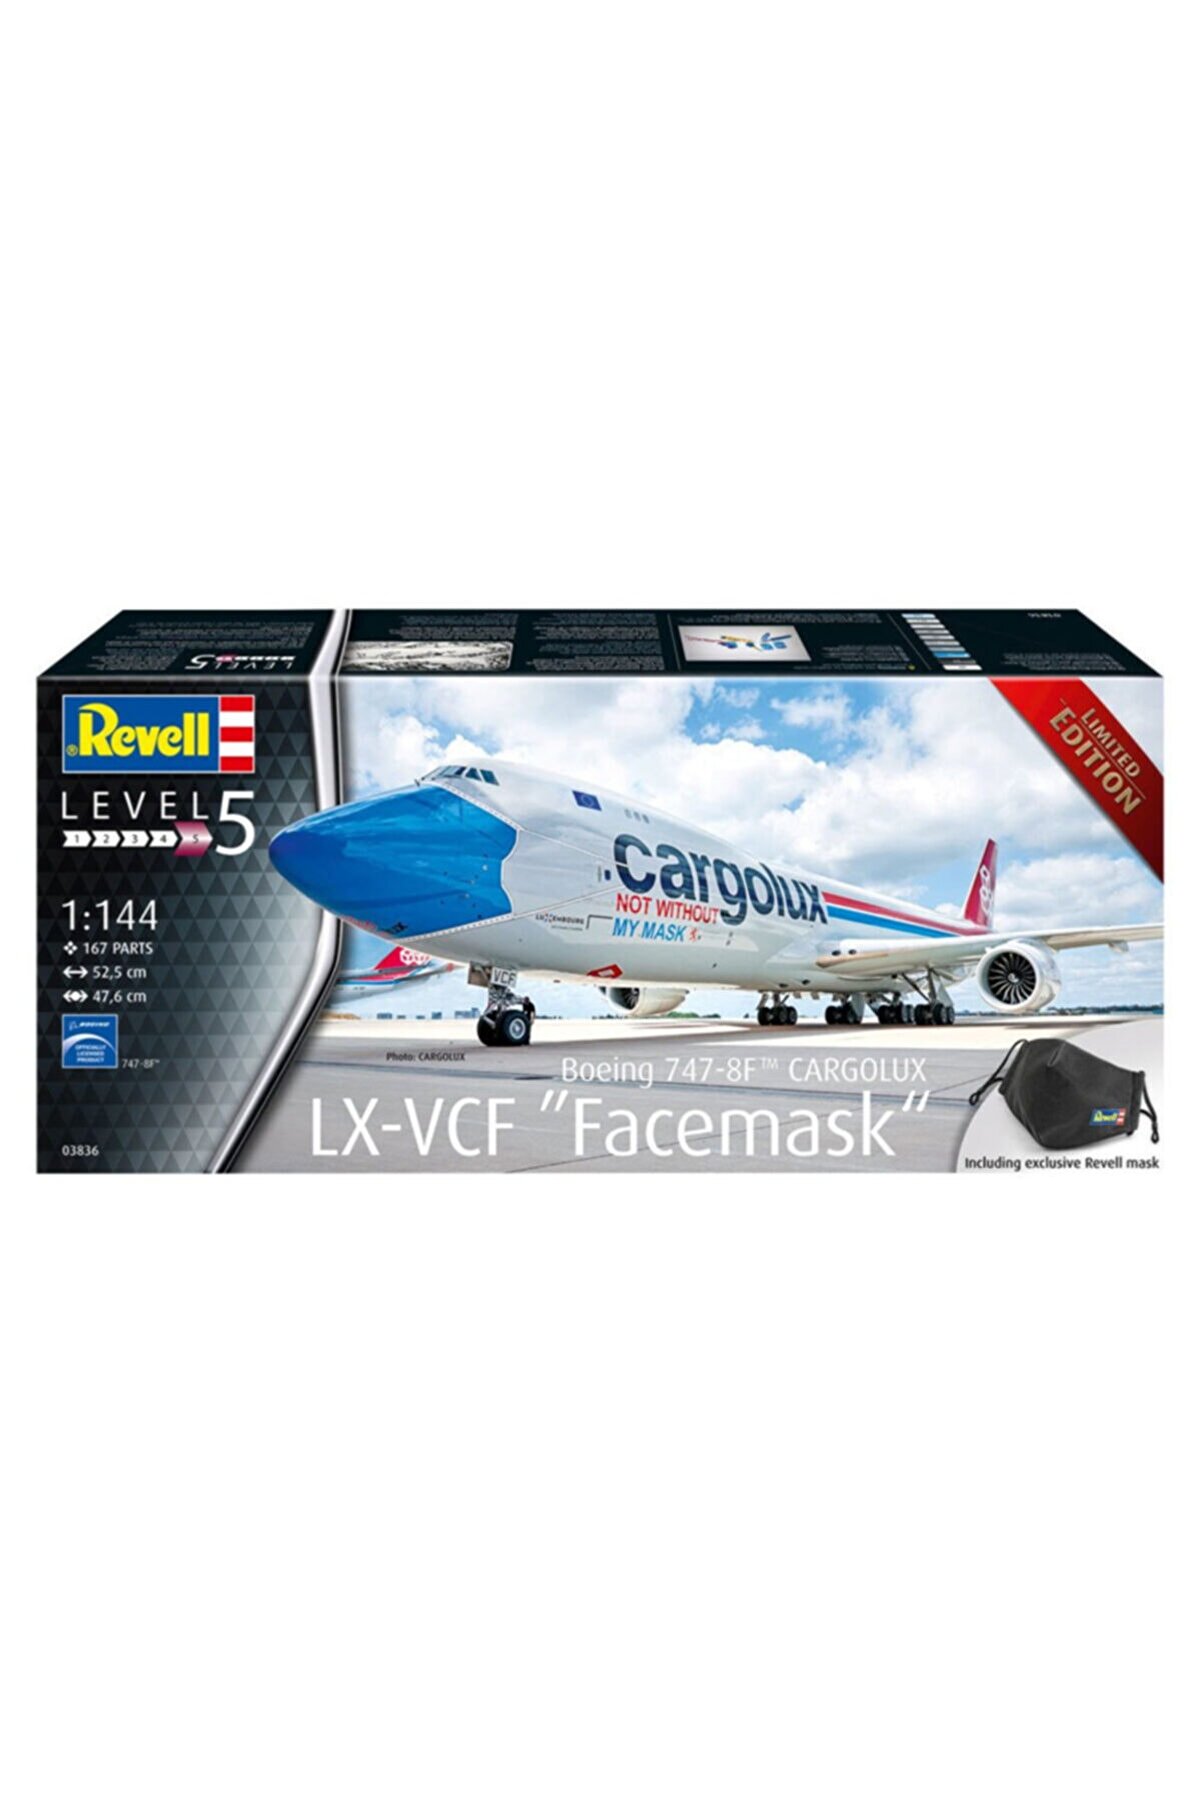 REVELL Maket Model Kit Boeing 747-8f Cargolux 03836